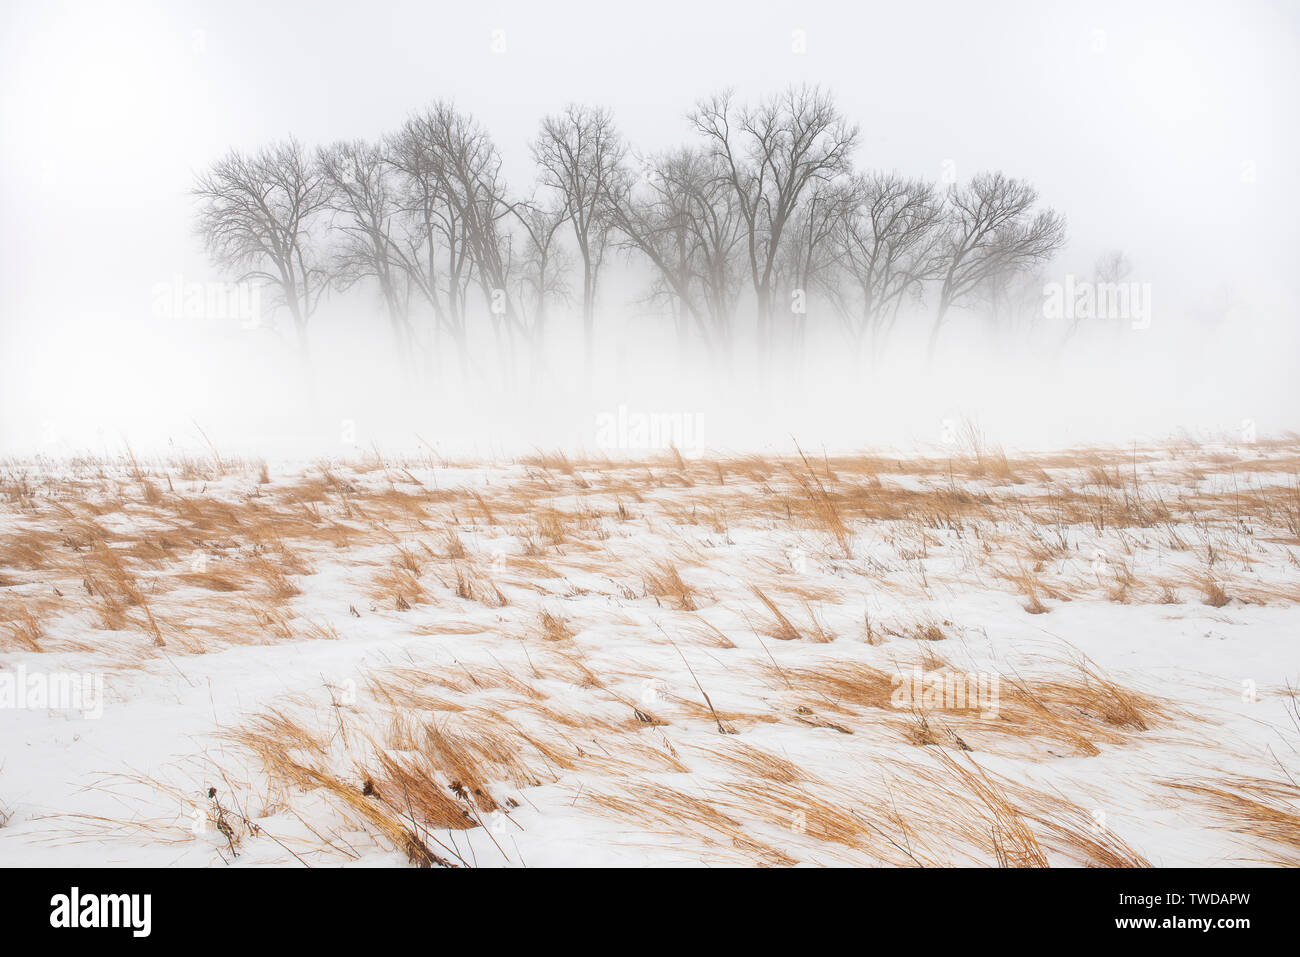 Starker Nebel, Bäumen und Wiese, März, Whitetail Holz Regional Park, Dakota County, MN, USA, von Dominique Braud/Dembinsky Foto Assoc Stockfoto